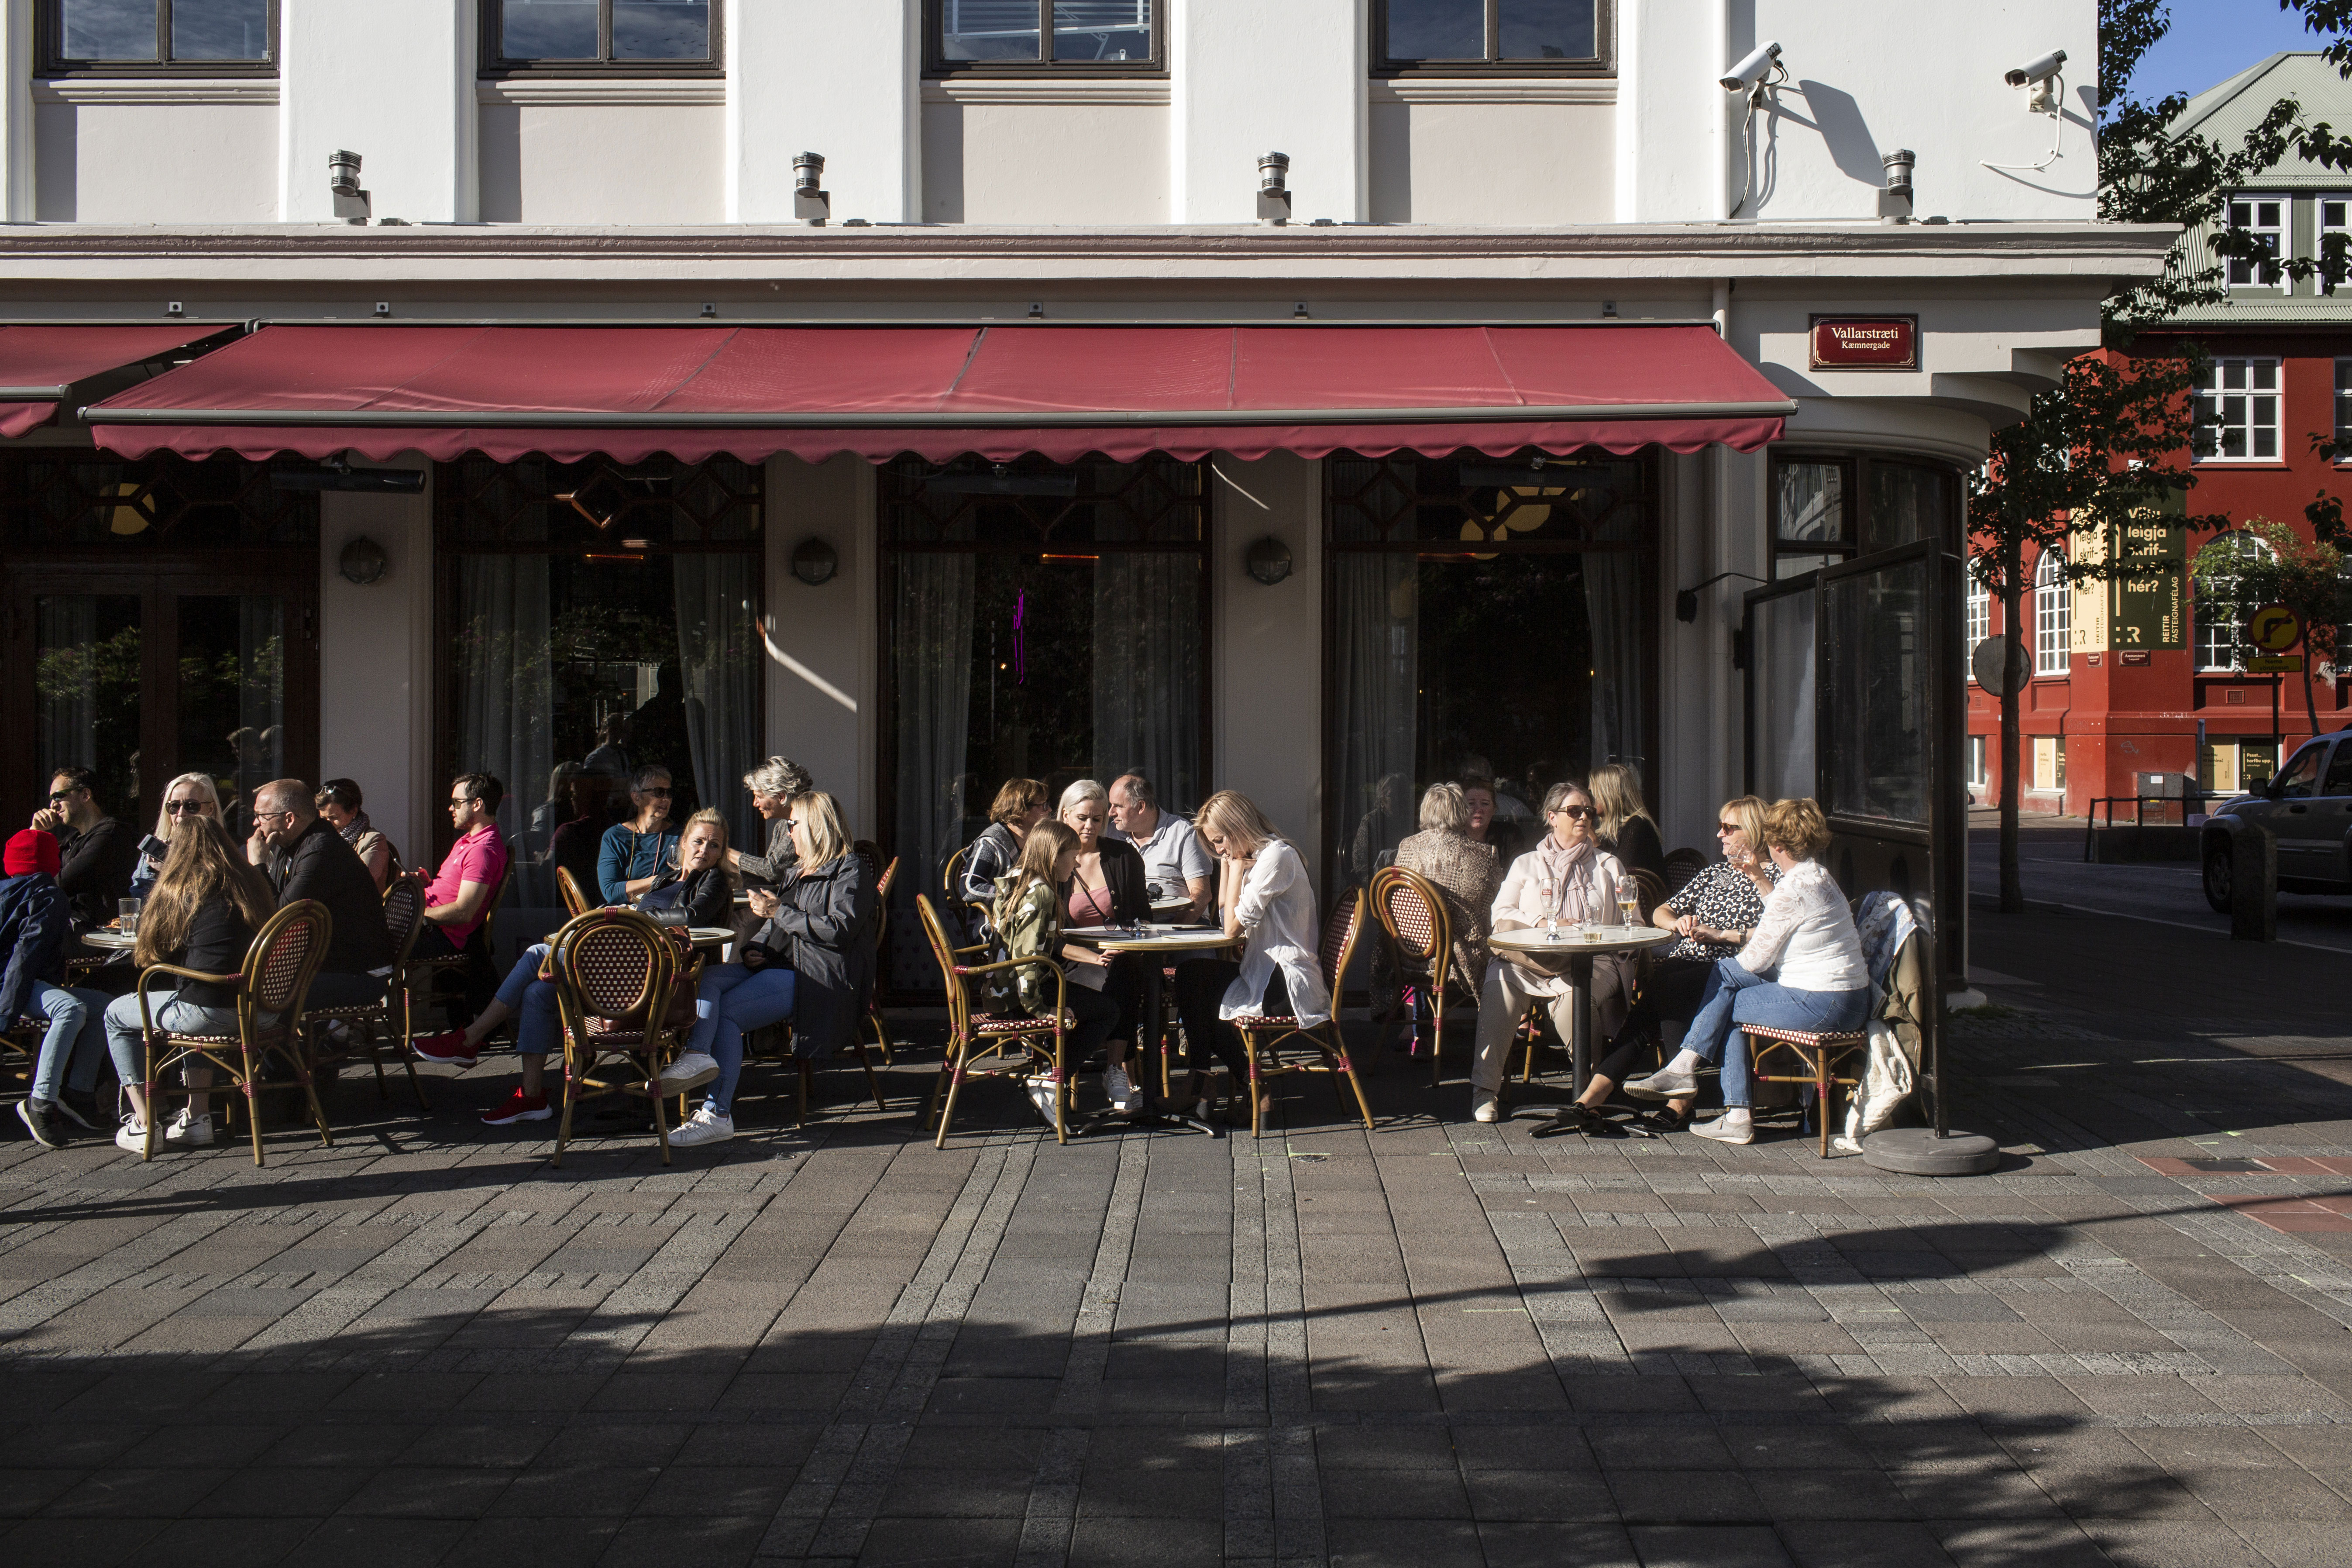 People dine at a restaurant in Reykjavík, Iceland, on July 19.